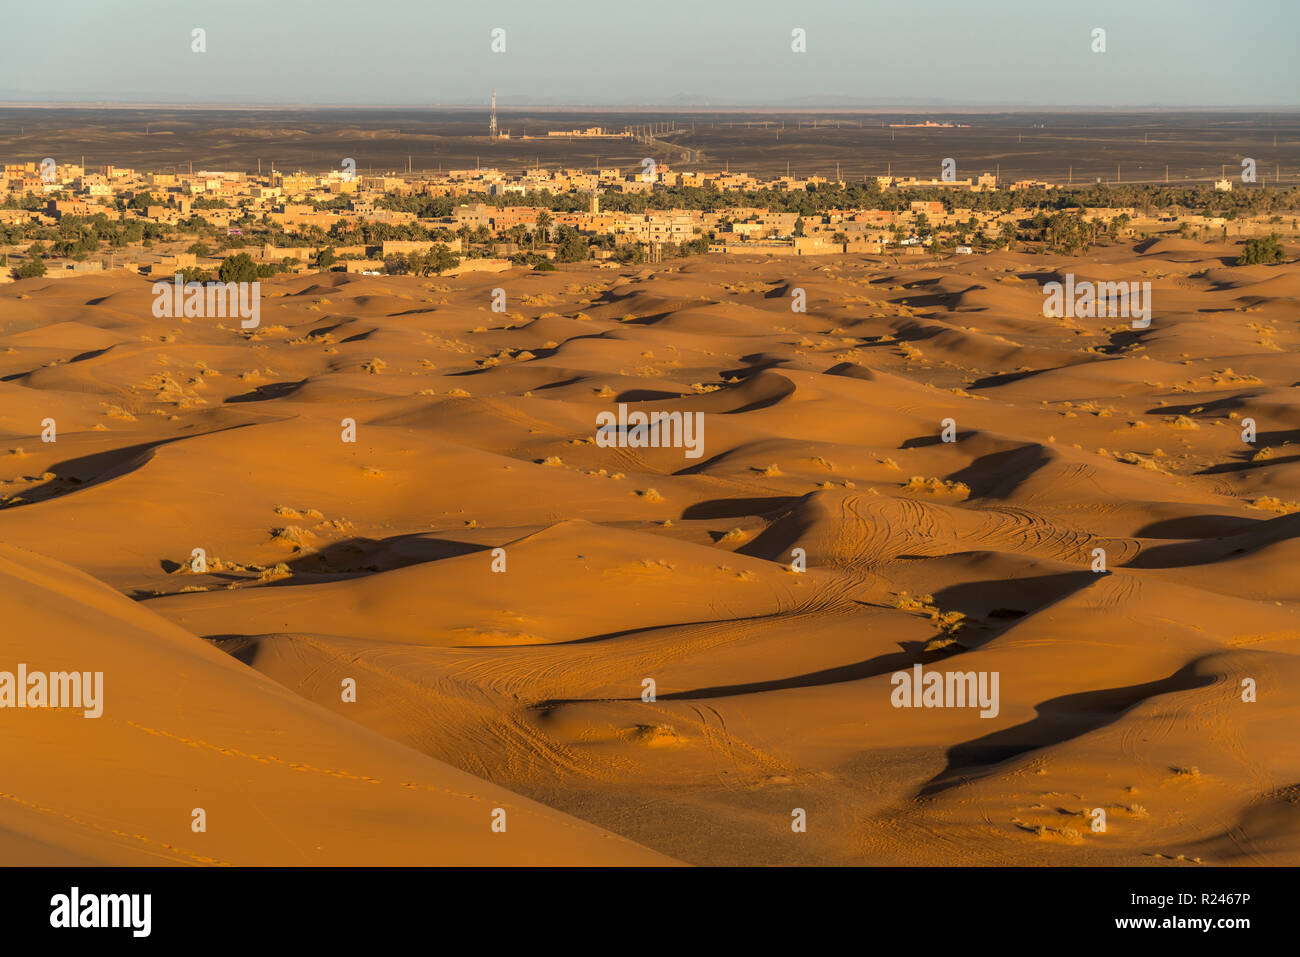 Der Ort Merzouga und die Wüste Sahara, Marokko | Merzouga Dorf und die Wüste Sahara, Königreich Marokko, Afrika Stockfoto